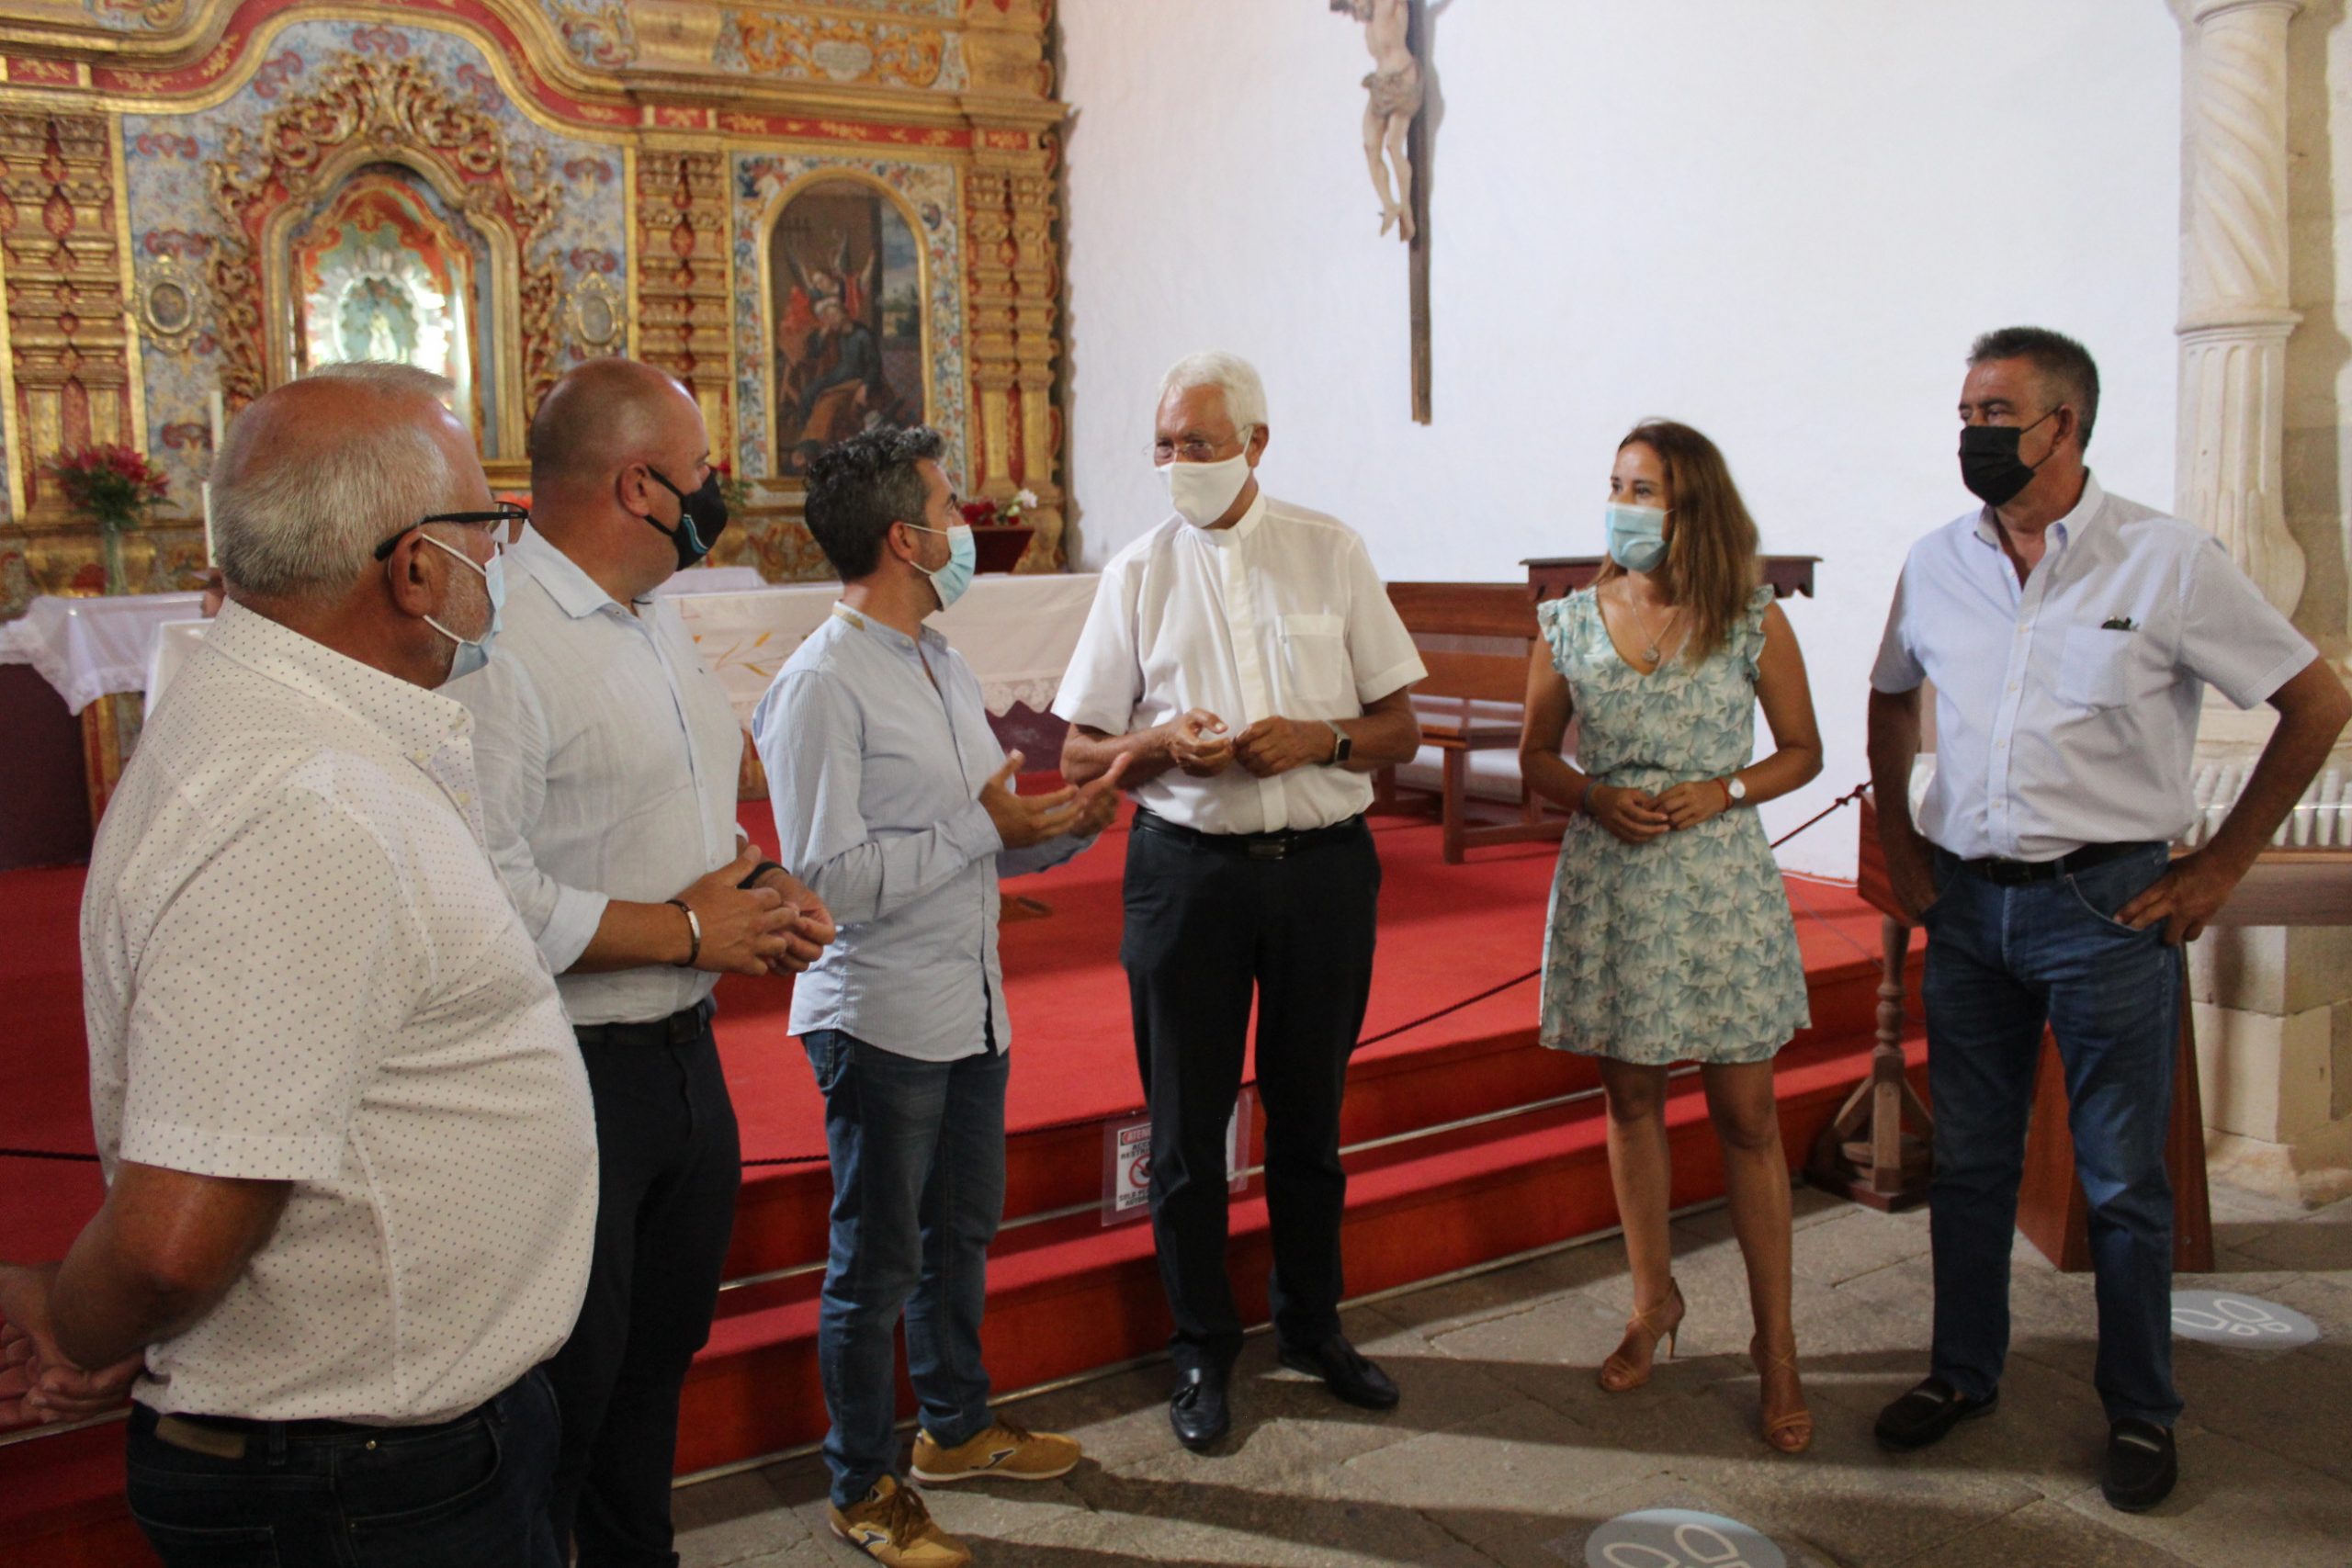 pena1-scaled La peregrinación a la Vega de Río Palmas durante todo septiembre